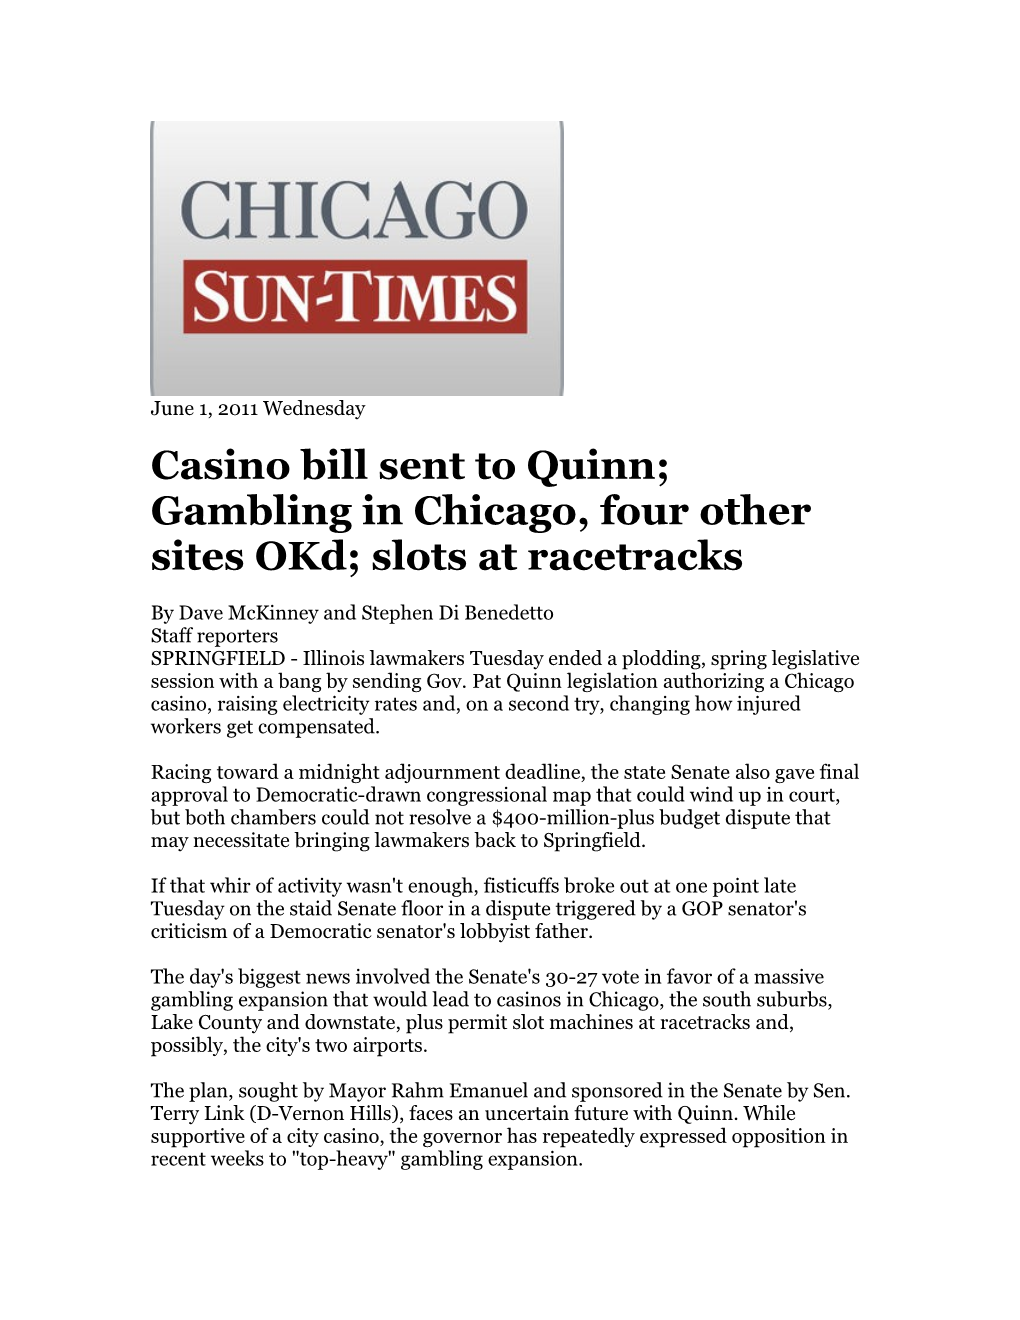 Casino Bill Sent to Quinn;